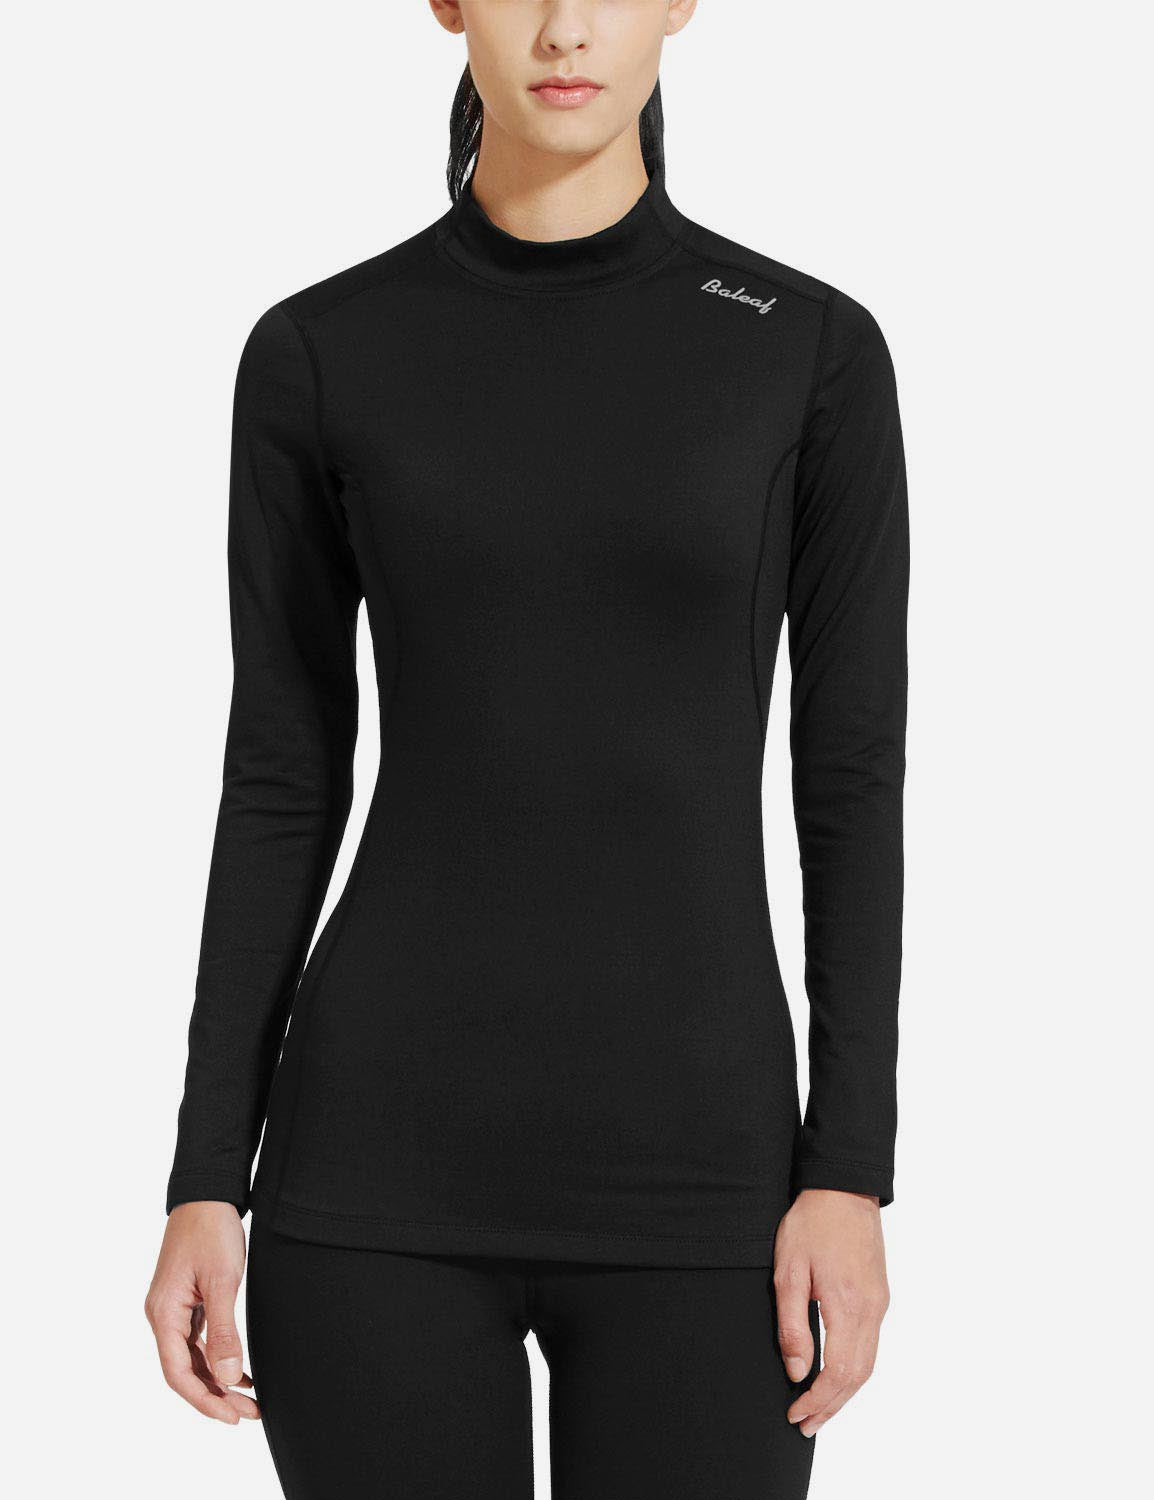 Baleaf Women's Basic Compression Mock-Neck Long Sleeved Shirt abd166 Black Front